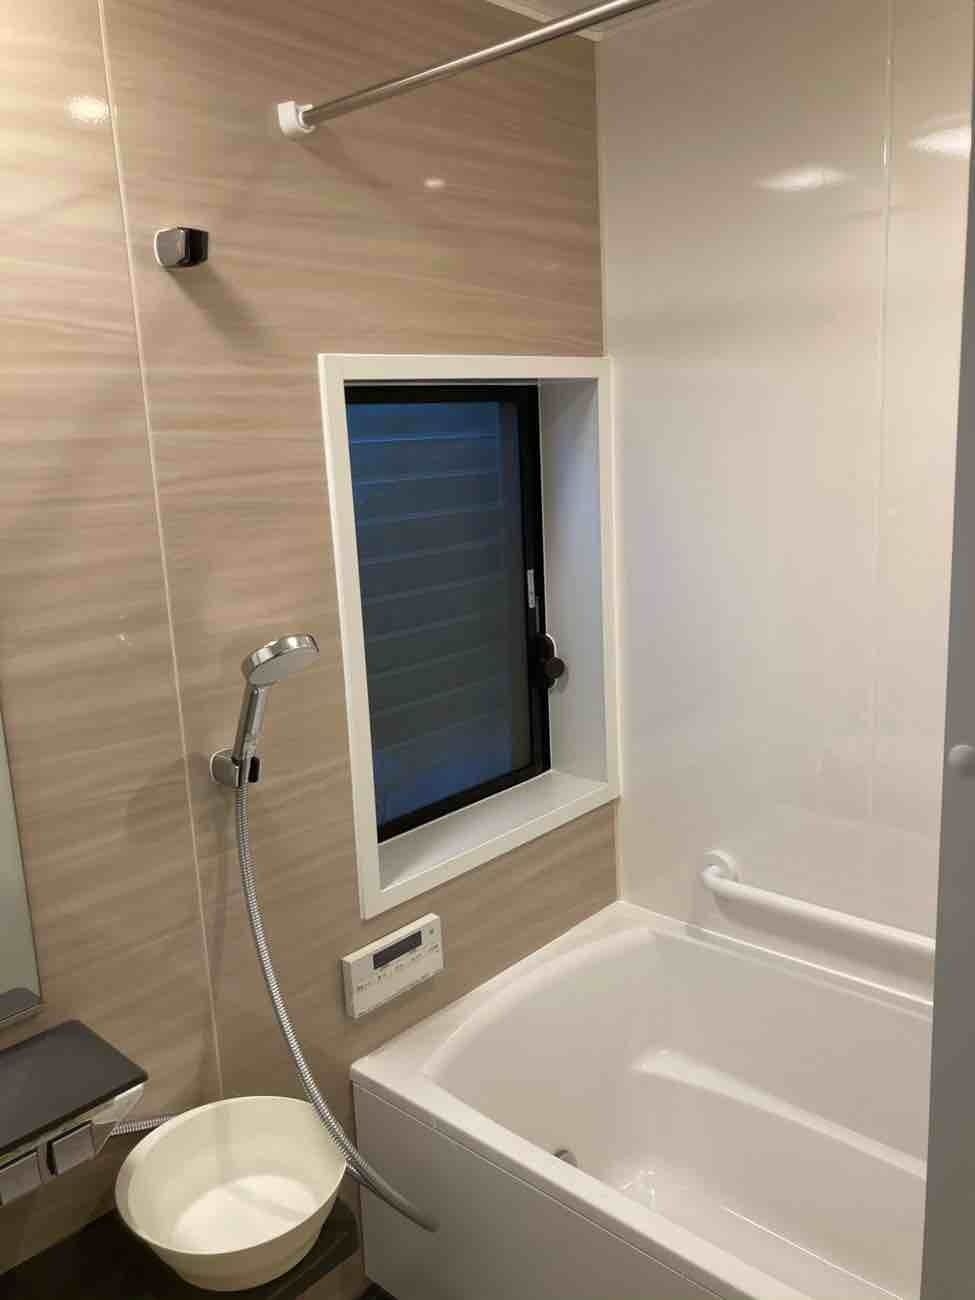 【埼玉県三郷市】A様邸風呂浴室リフォーム ユニットバス交換工事が完了しました。タカラ グランスパ 画像